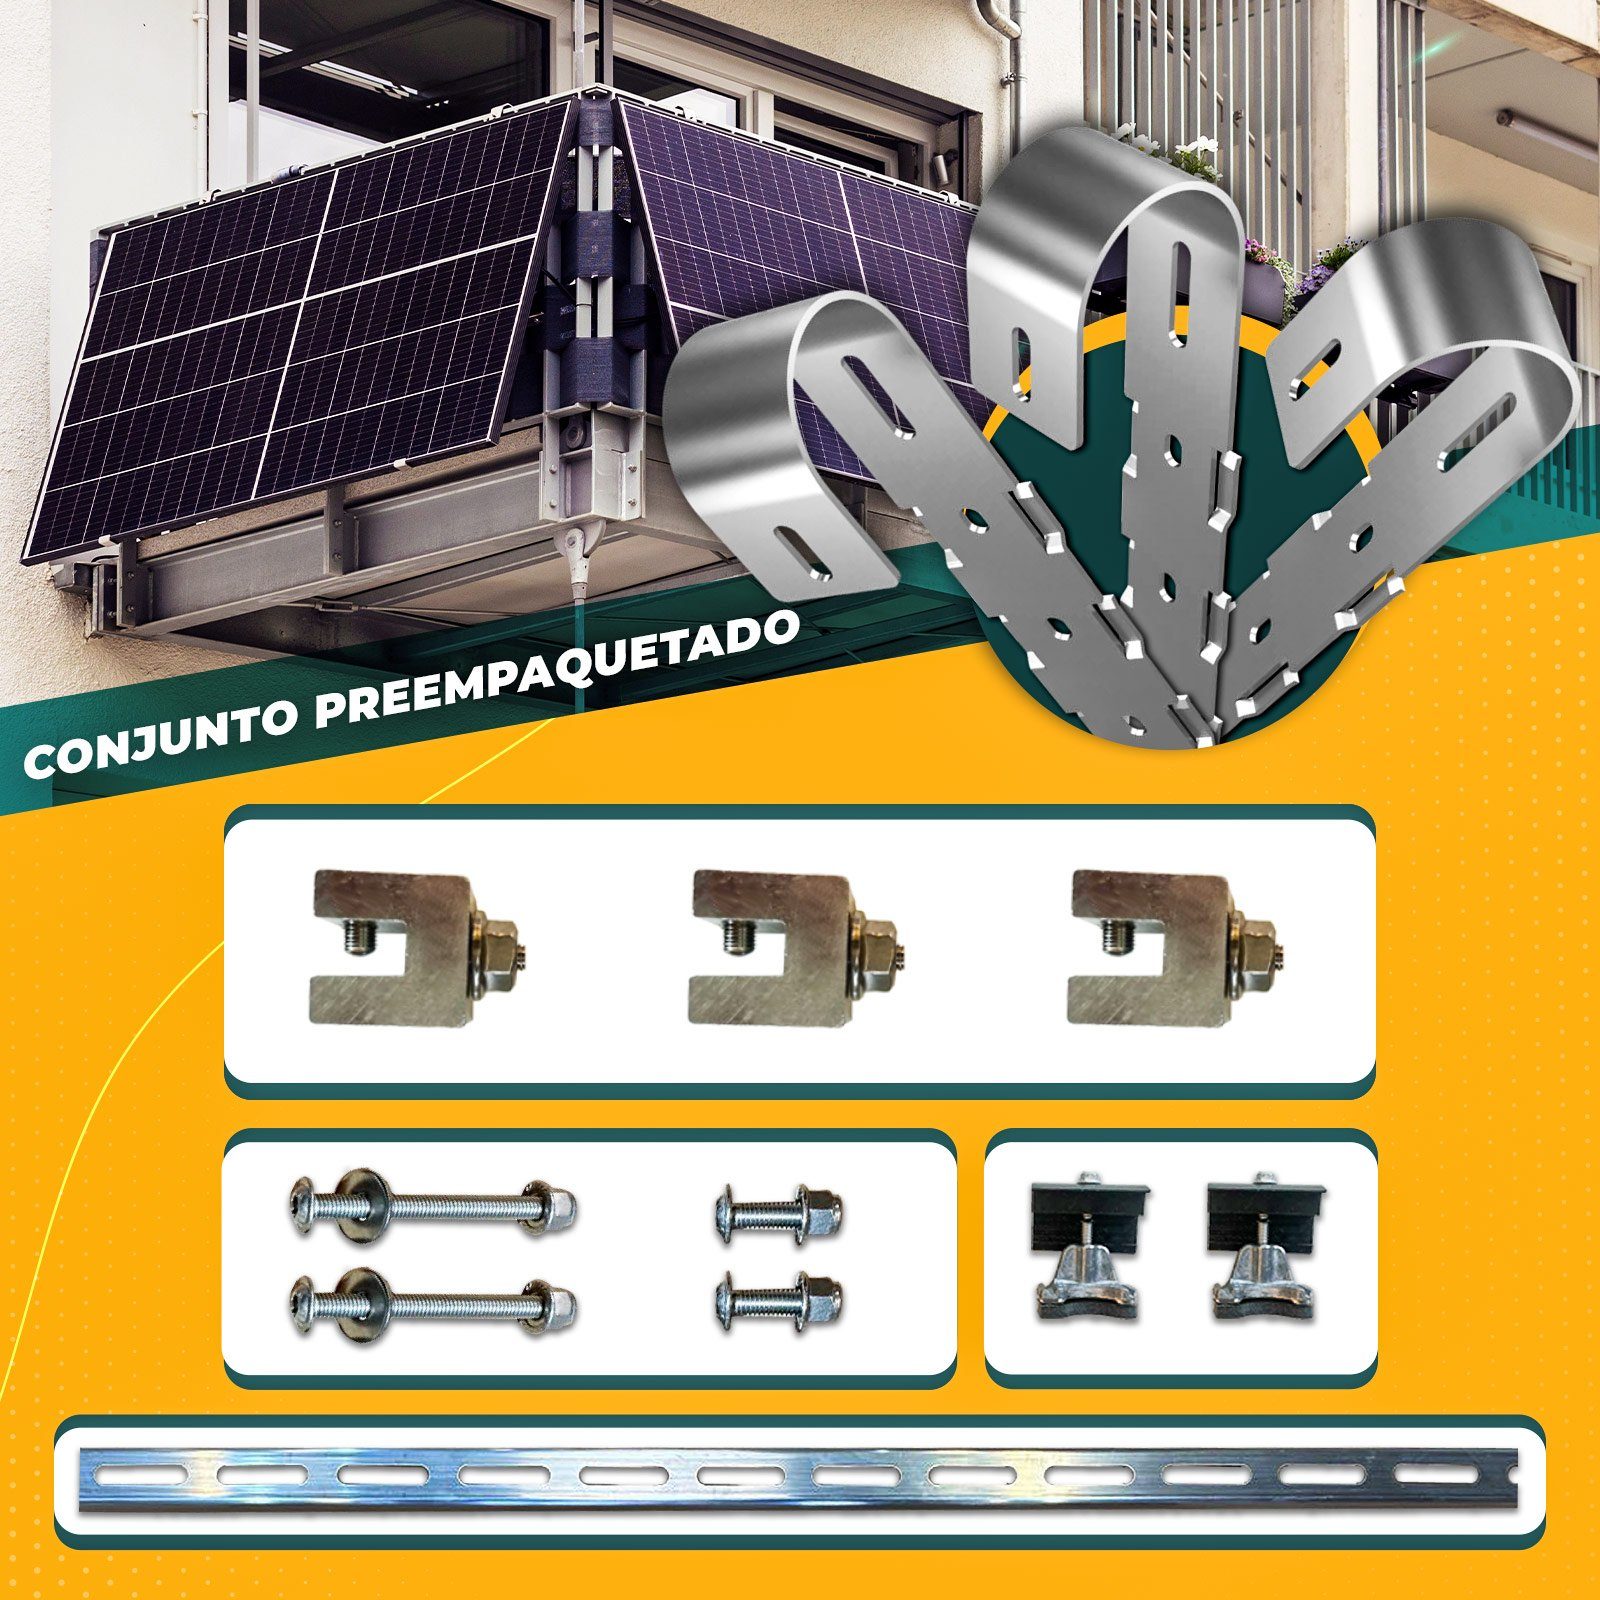 WIFI und NEP 430W Wechselrichter, Komplettset 860W enprovesolar Bifazial Eckige Solarmodule, Solaranlage Stecker Schuko PV-Montage 10M Balkonkraftwerk Balkongeländer inkl. 800W